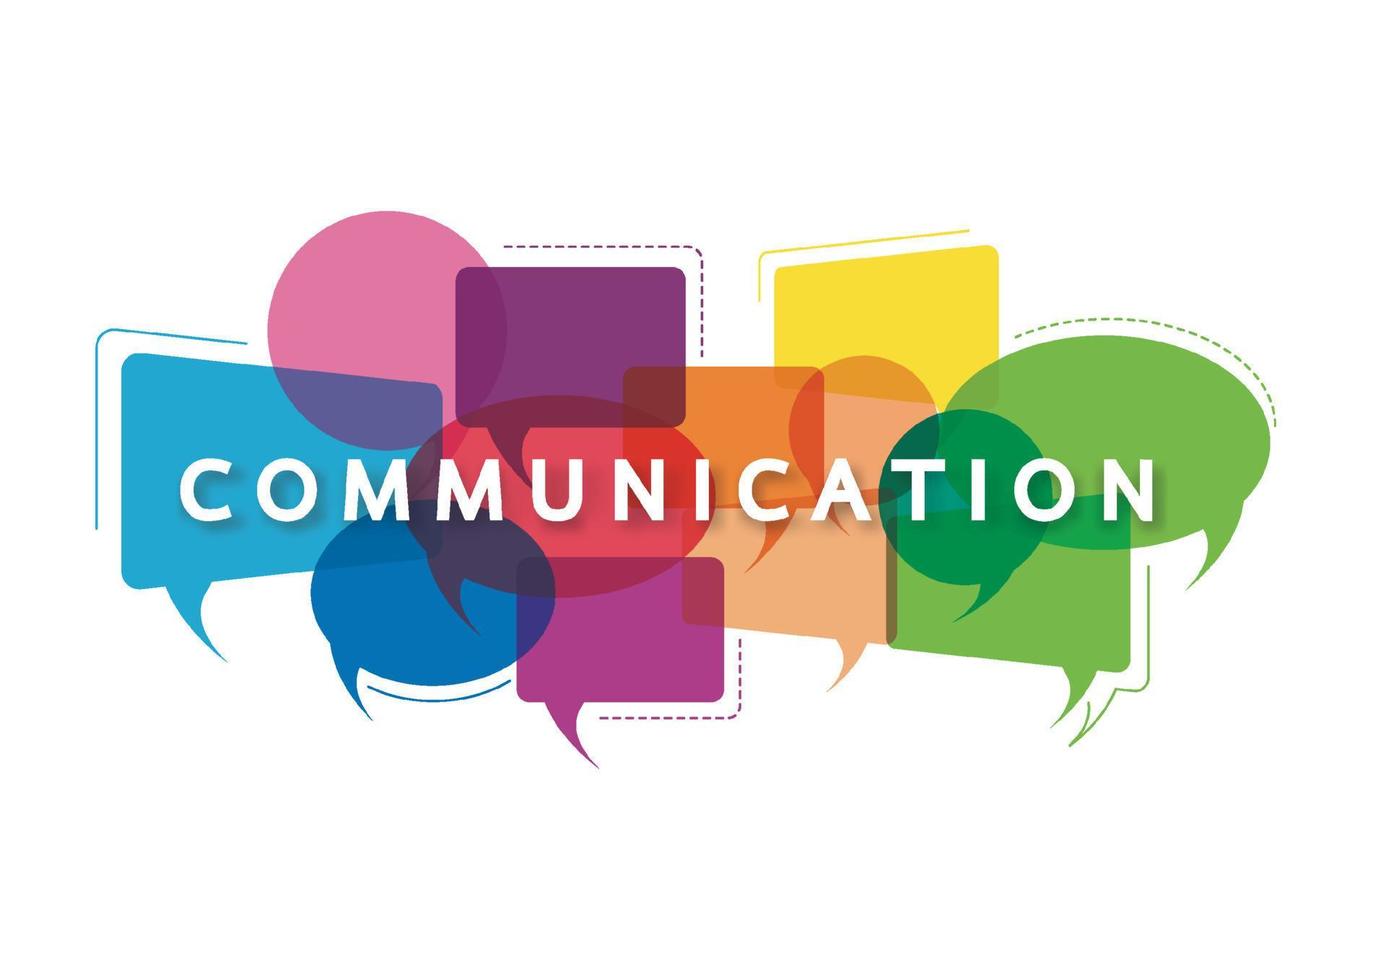 vectorillustratie van een communicatieconcept. het woord communicatie met kleurrijke dialoog tekstballonnen vector